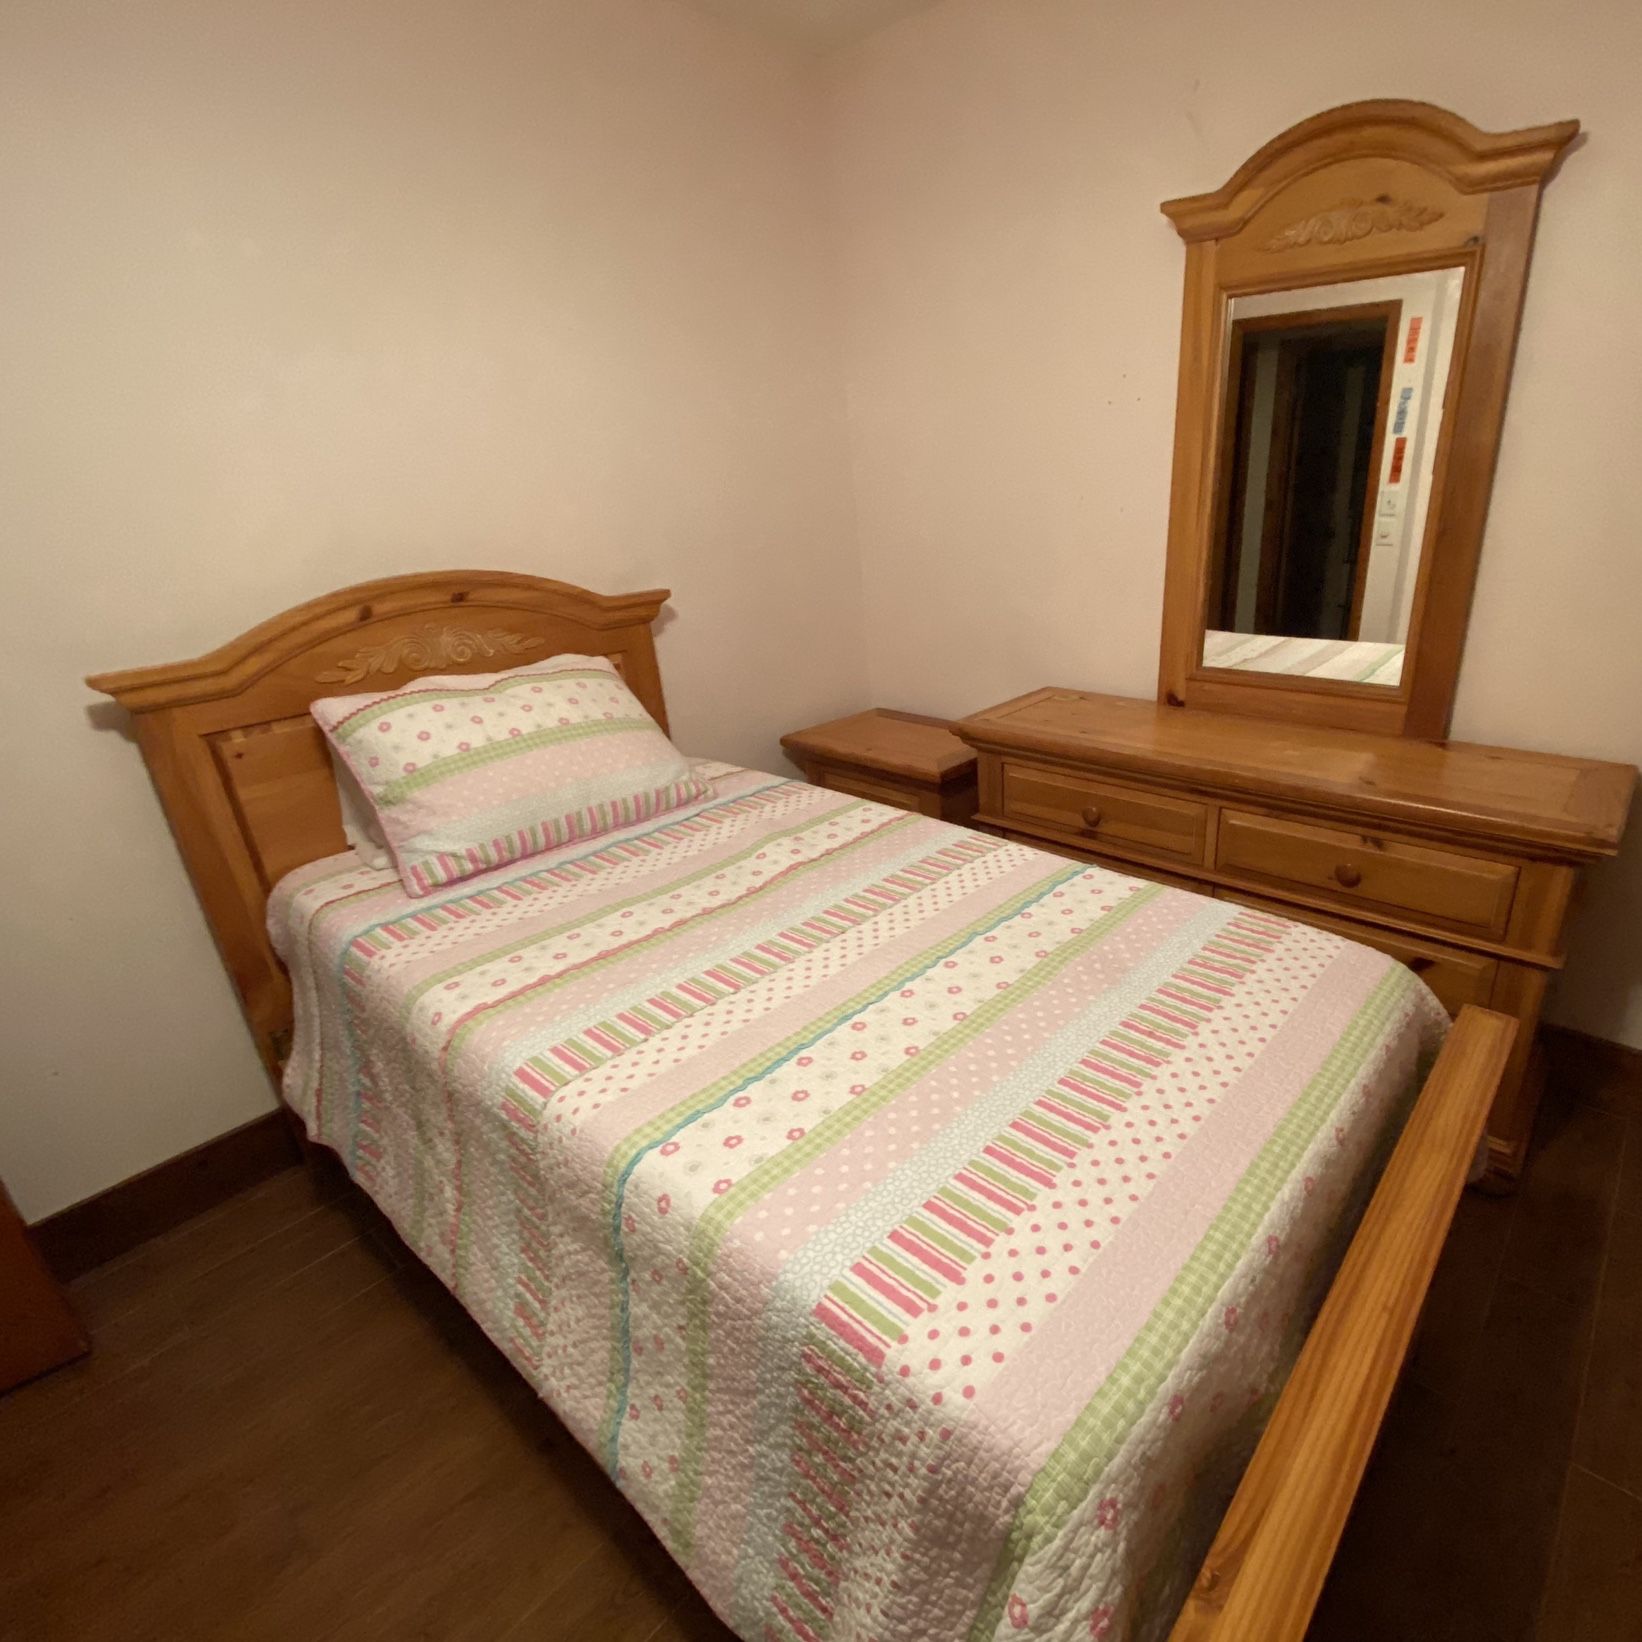 $250. Twin Bedroom Set With Fan 